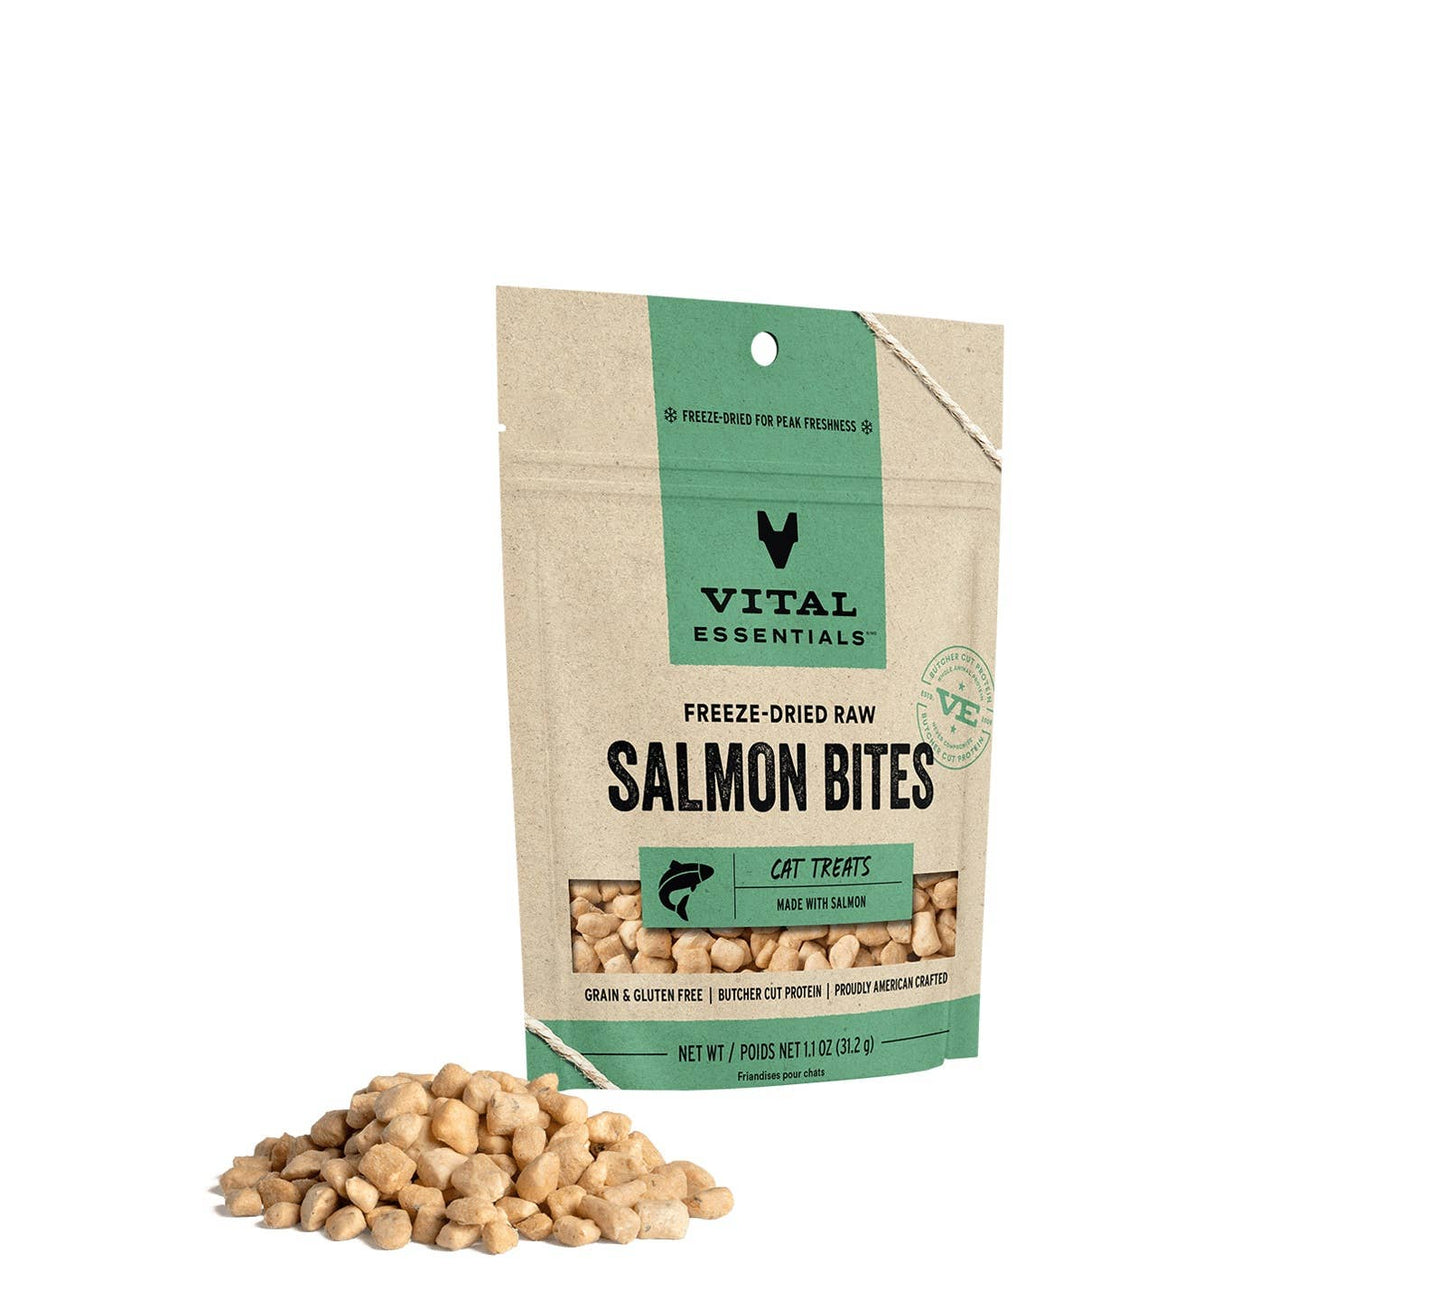 Vital Essentials Salmon Bites FD Cat Treats 1.1 oz